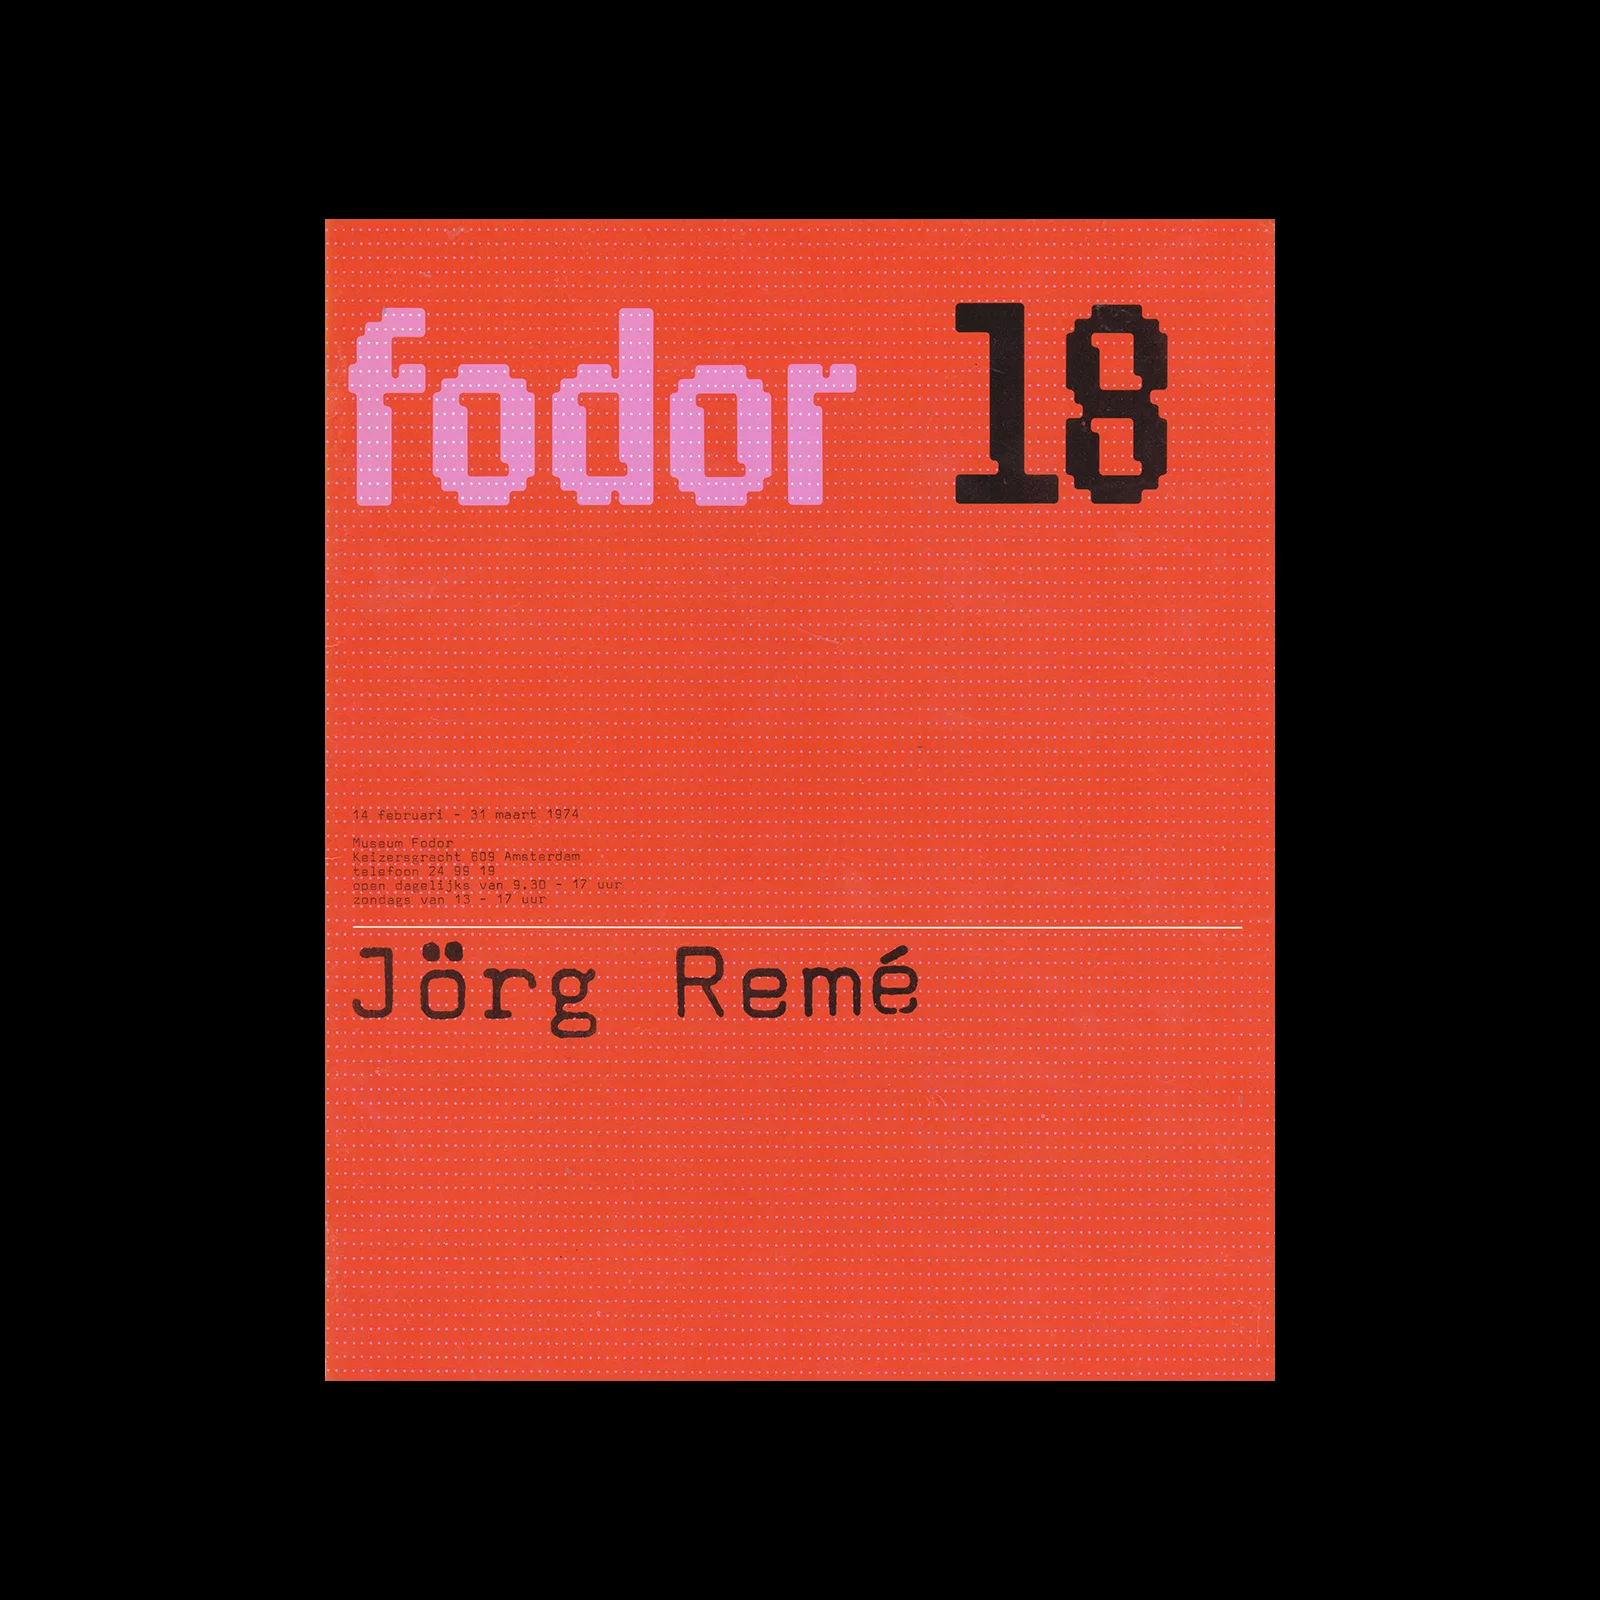 Fodor 18, 1974 - Jörg Remé. Designed by Wim Crouwel and Daphne Duijvelshoff (Total Design)